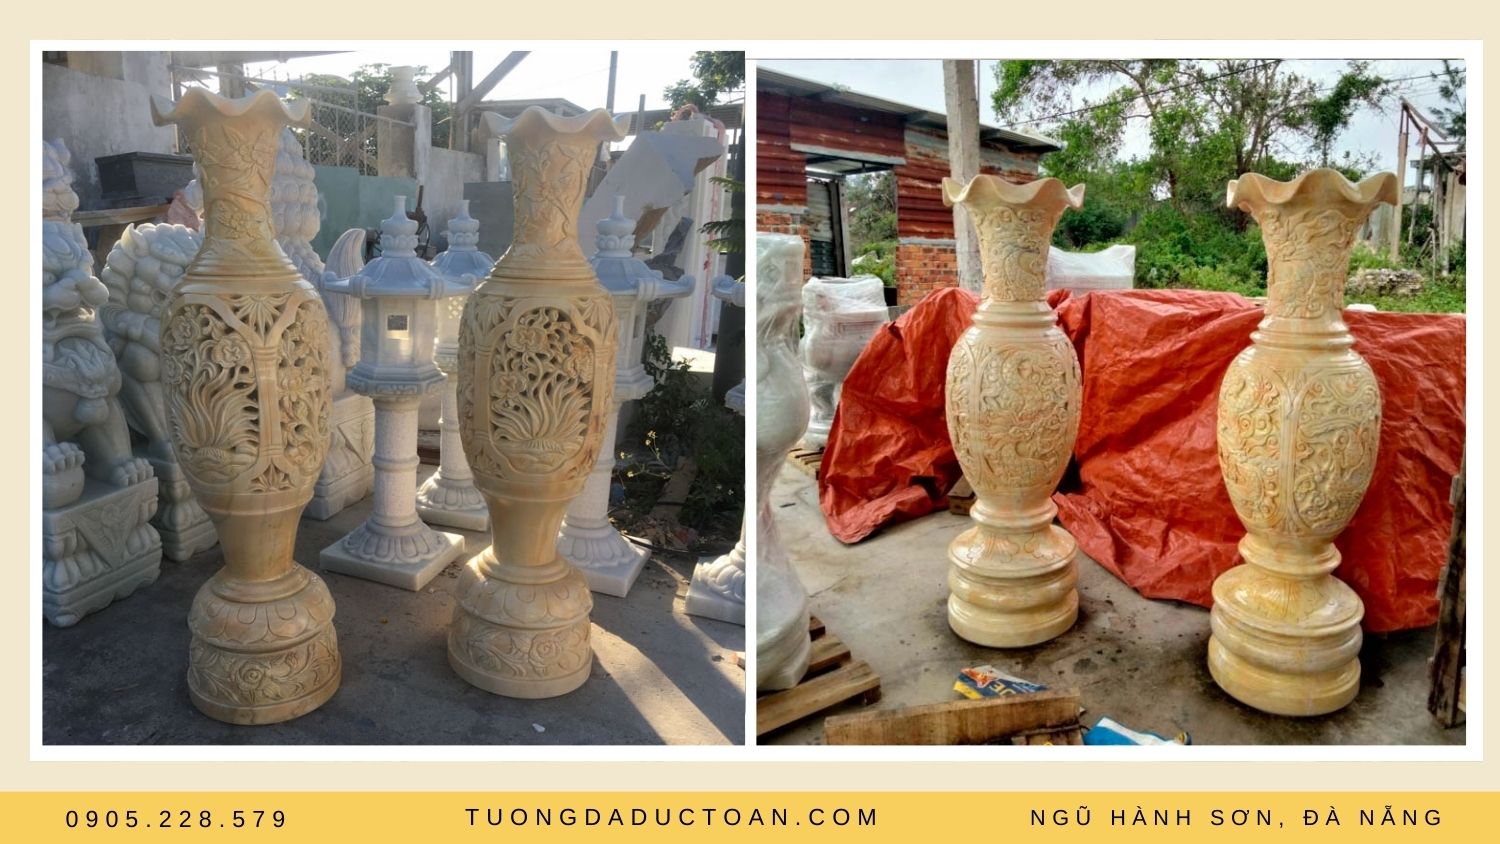 Lộc bình là vật phẩm trang trí đã có từ thời xa xưa trong văn hóa Việt Nam ta.